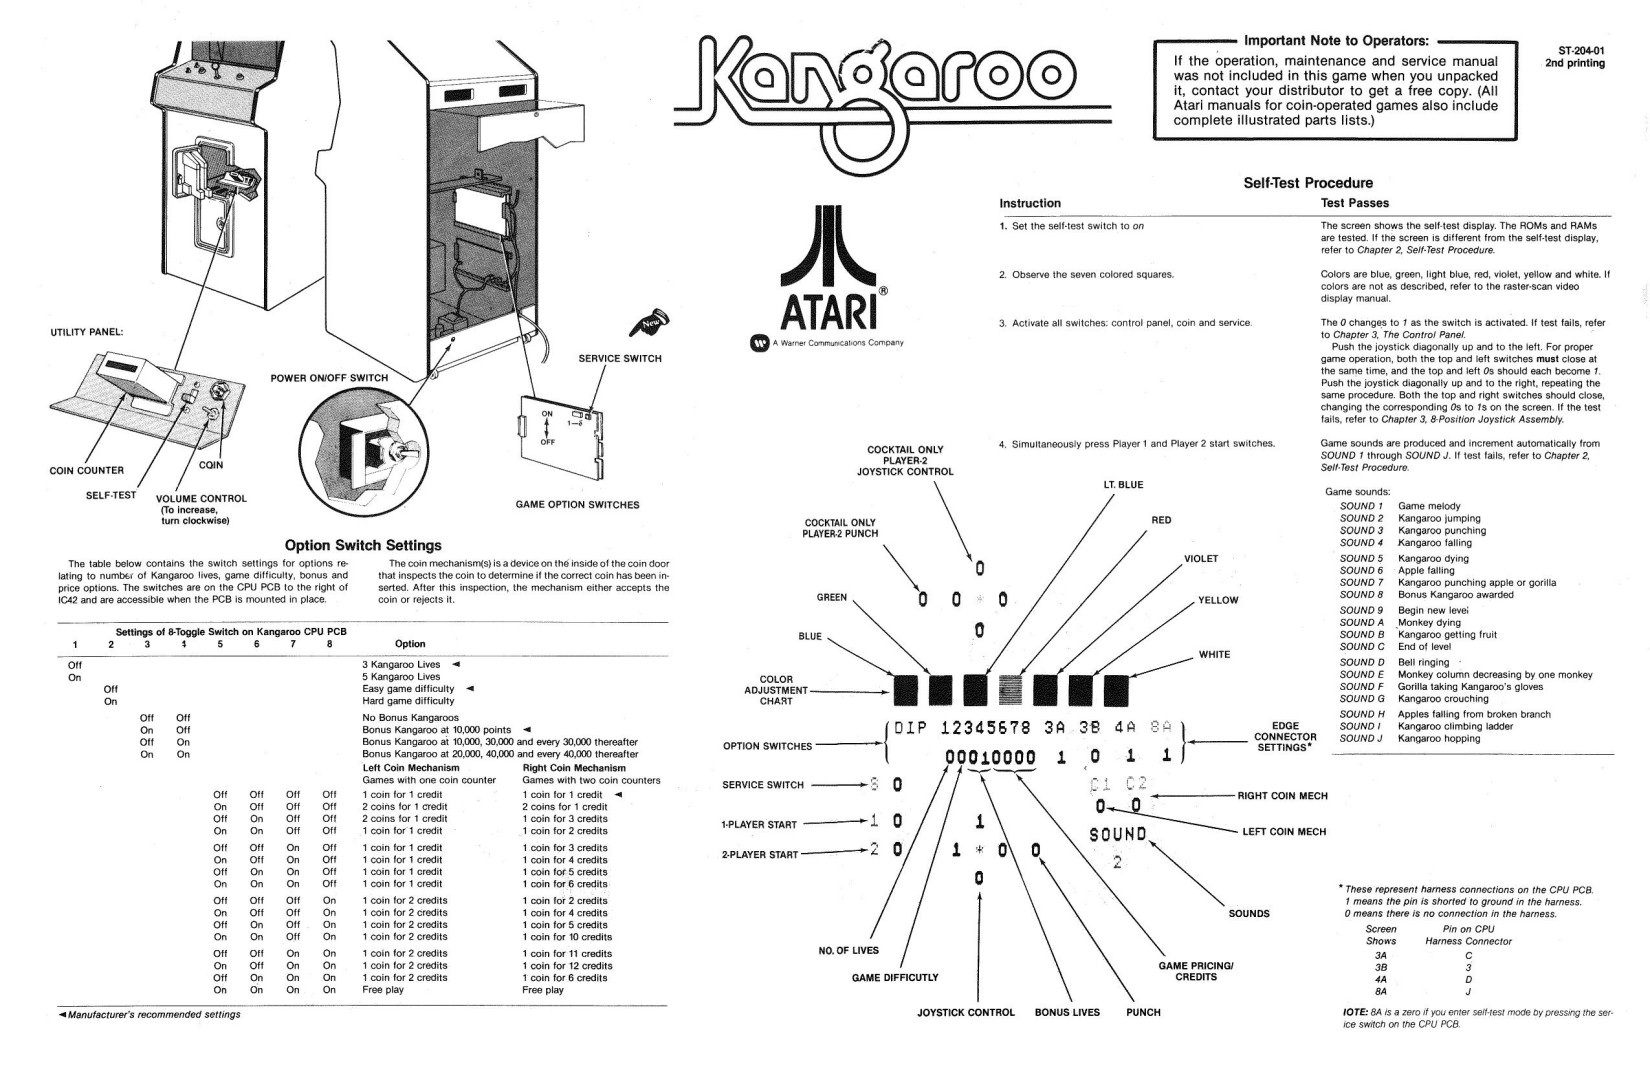 Kangaroo (Backdoor Sheet) (U)